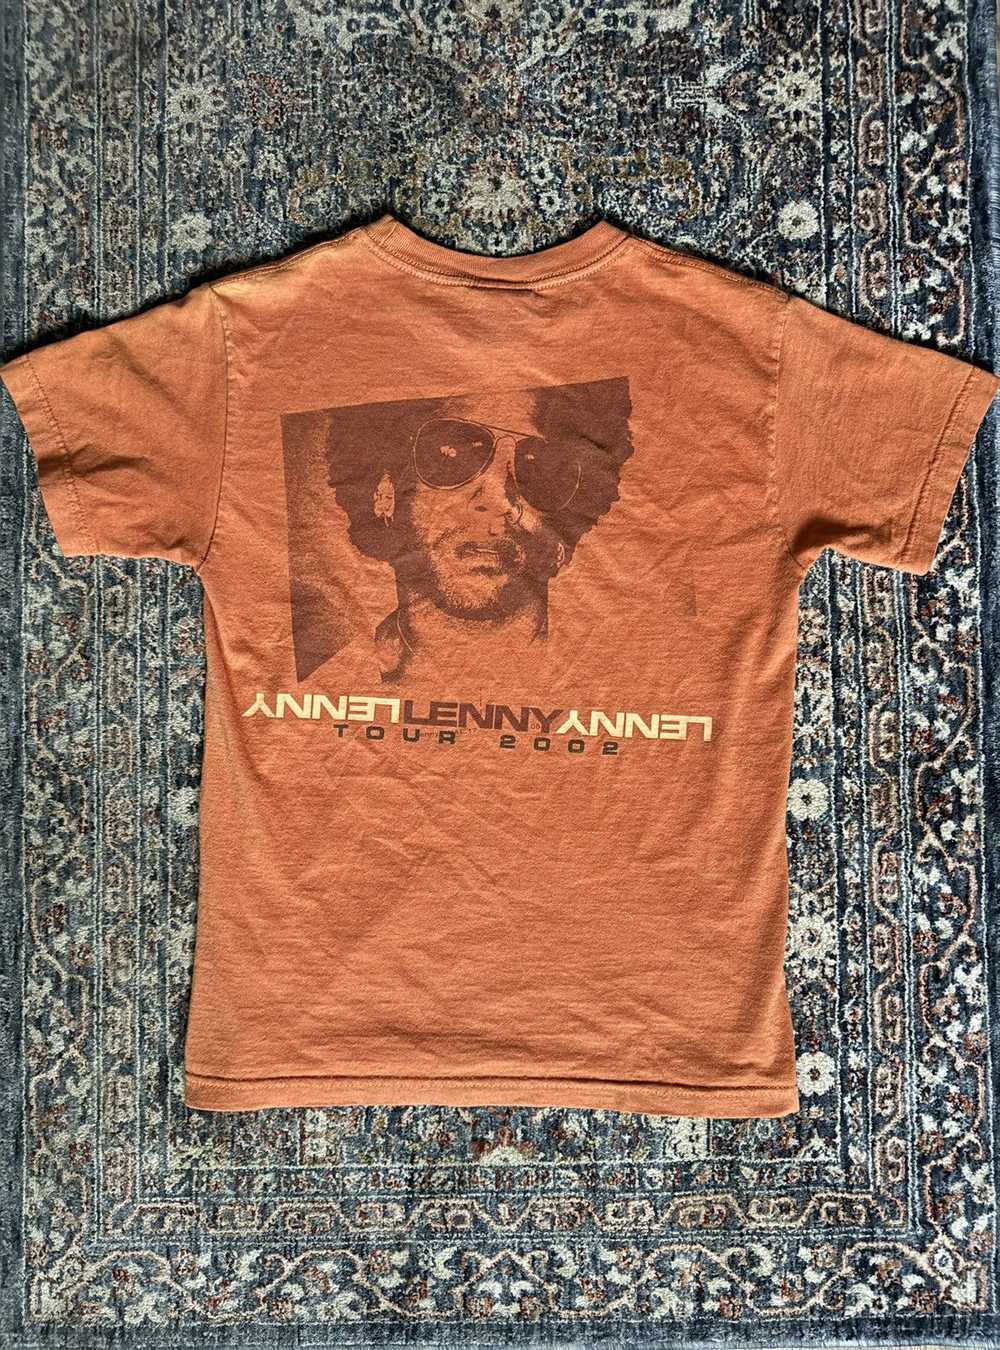 Vintage 2002 Lenny Kravits t shirt - image 2